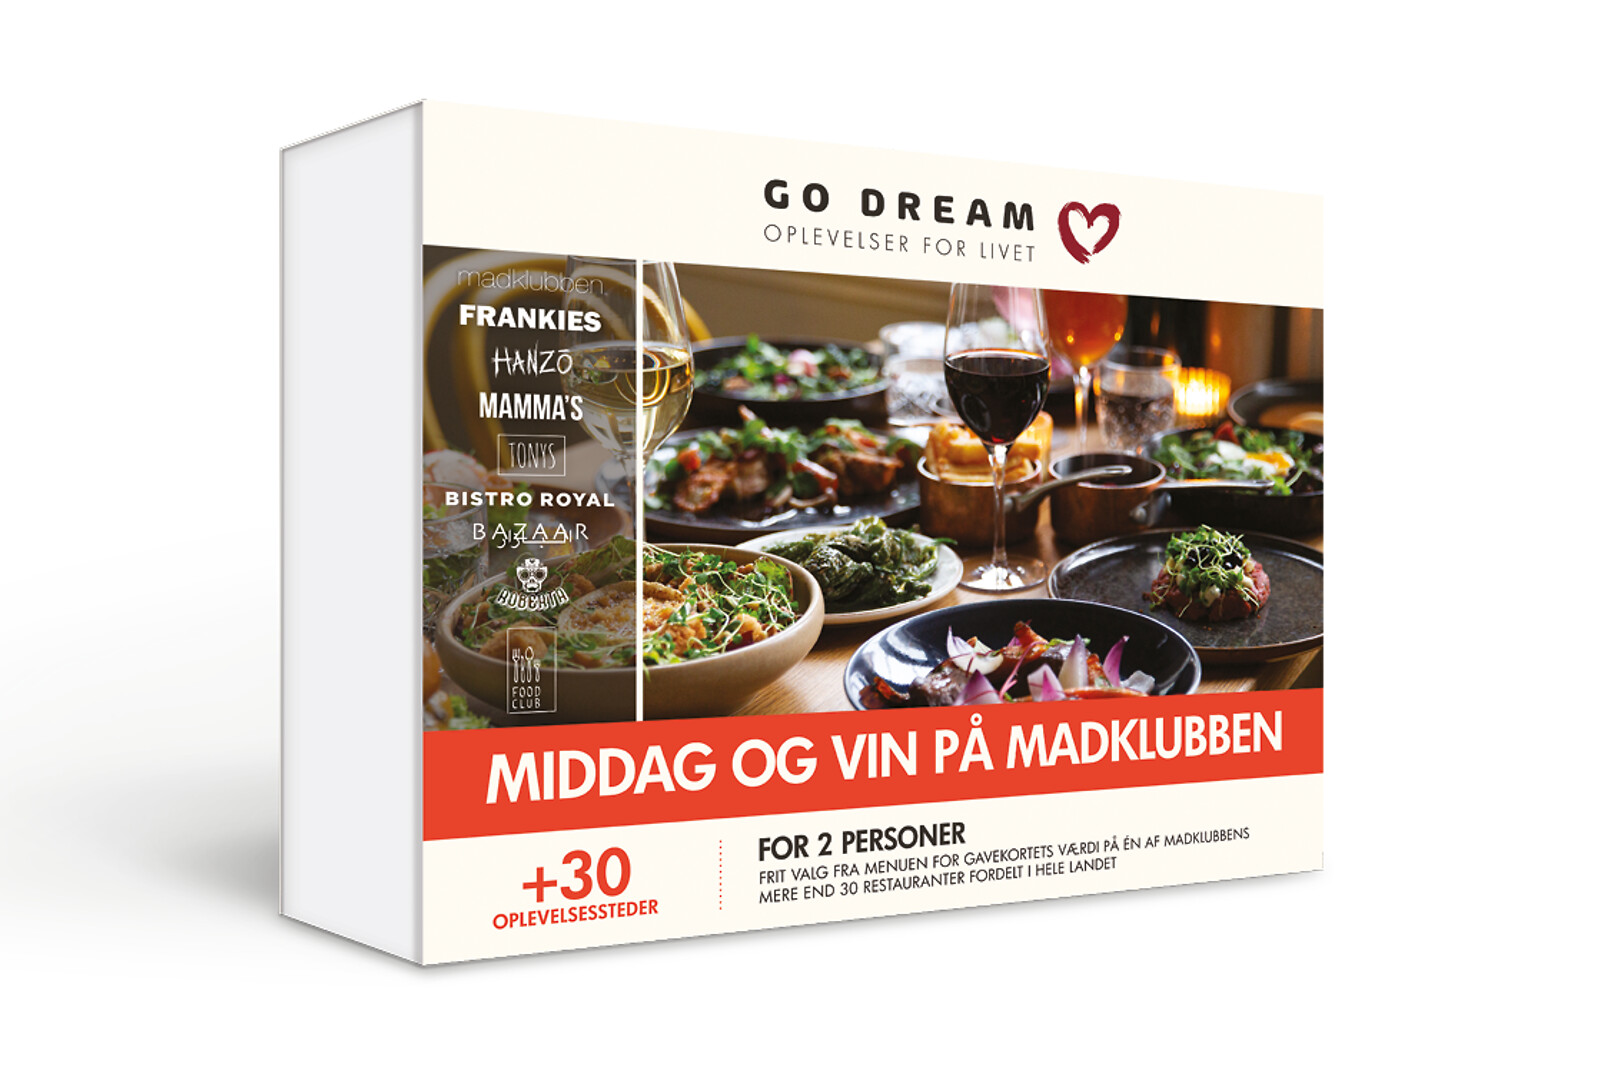 Se Middag Og Vin På Madklubben - Mad og Gastronomi - GO DREAM hos GO DREAM DK